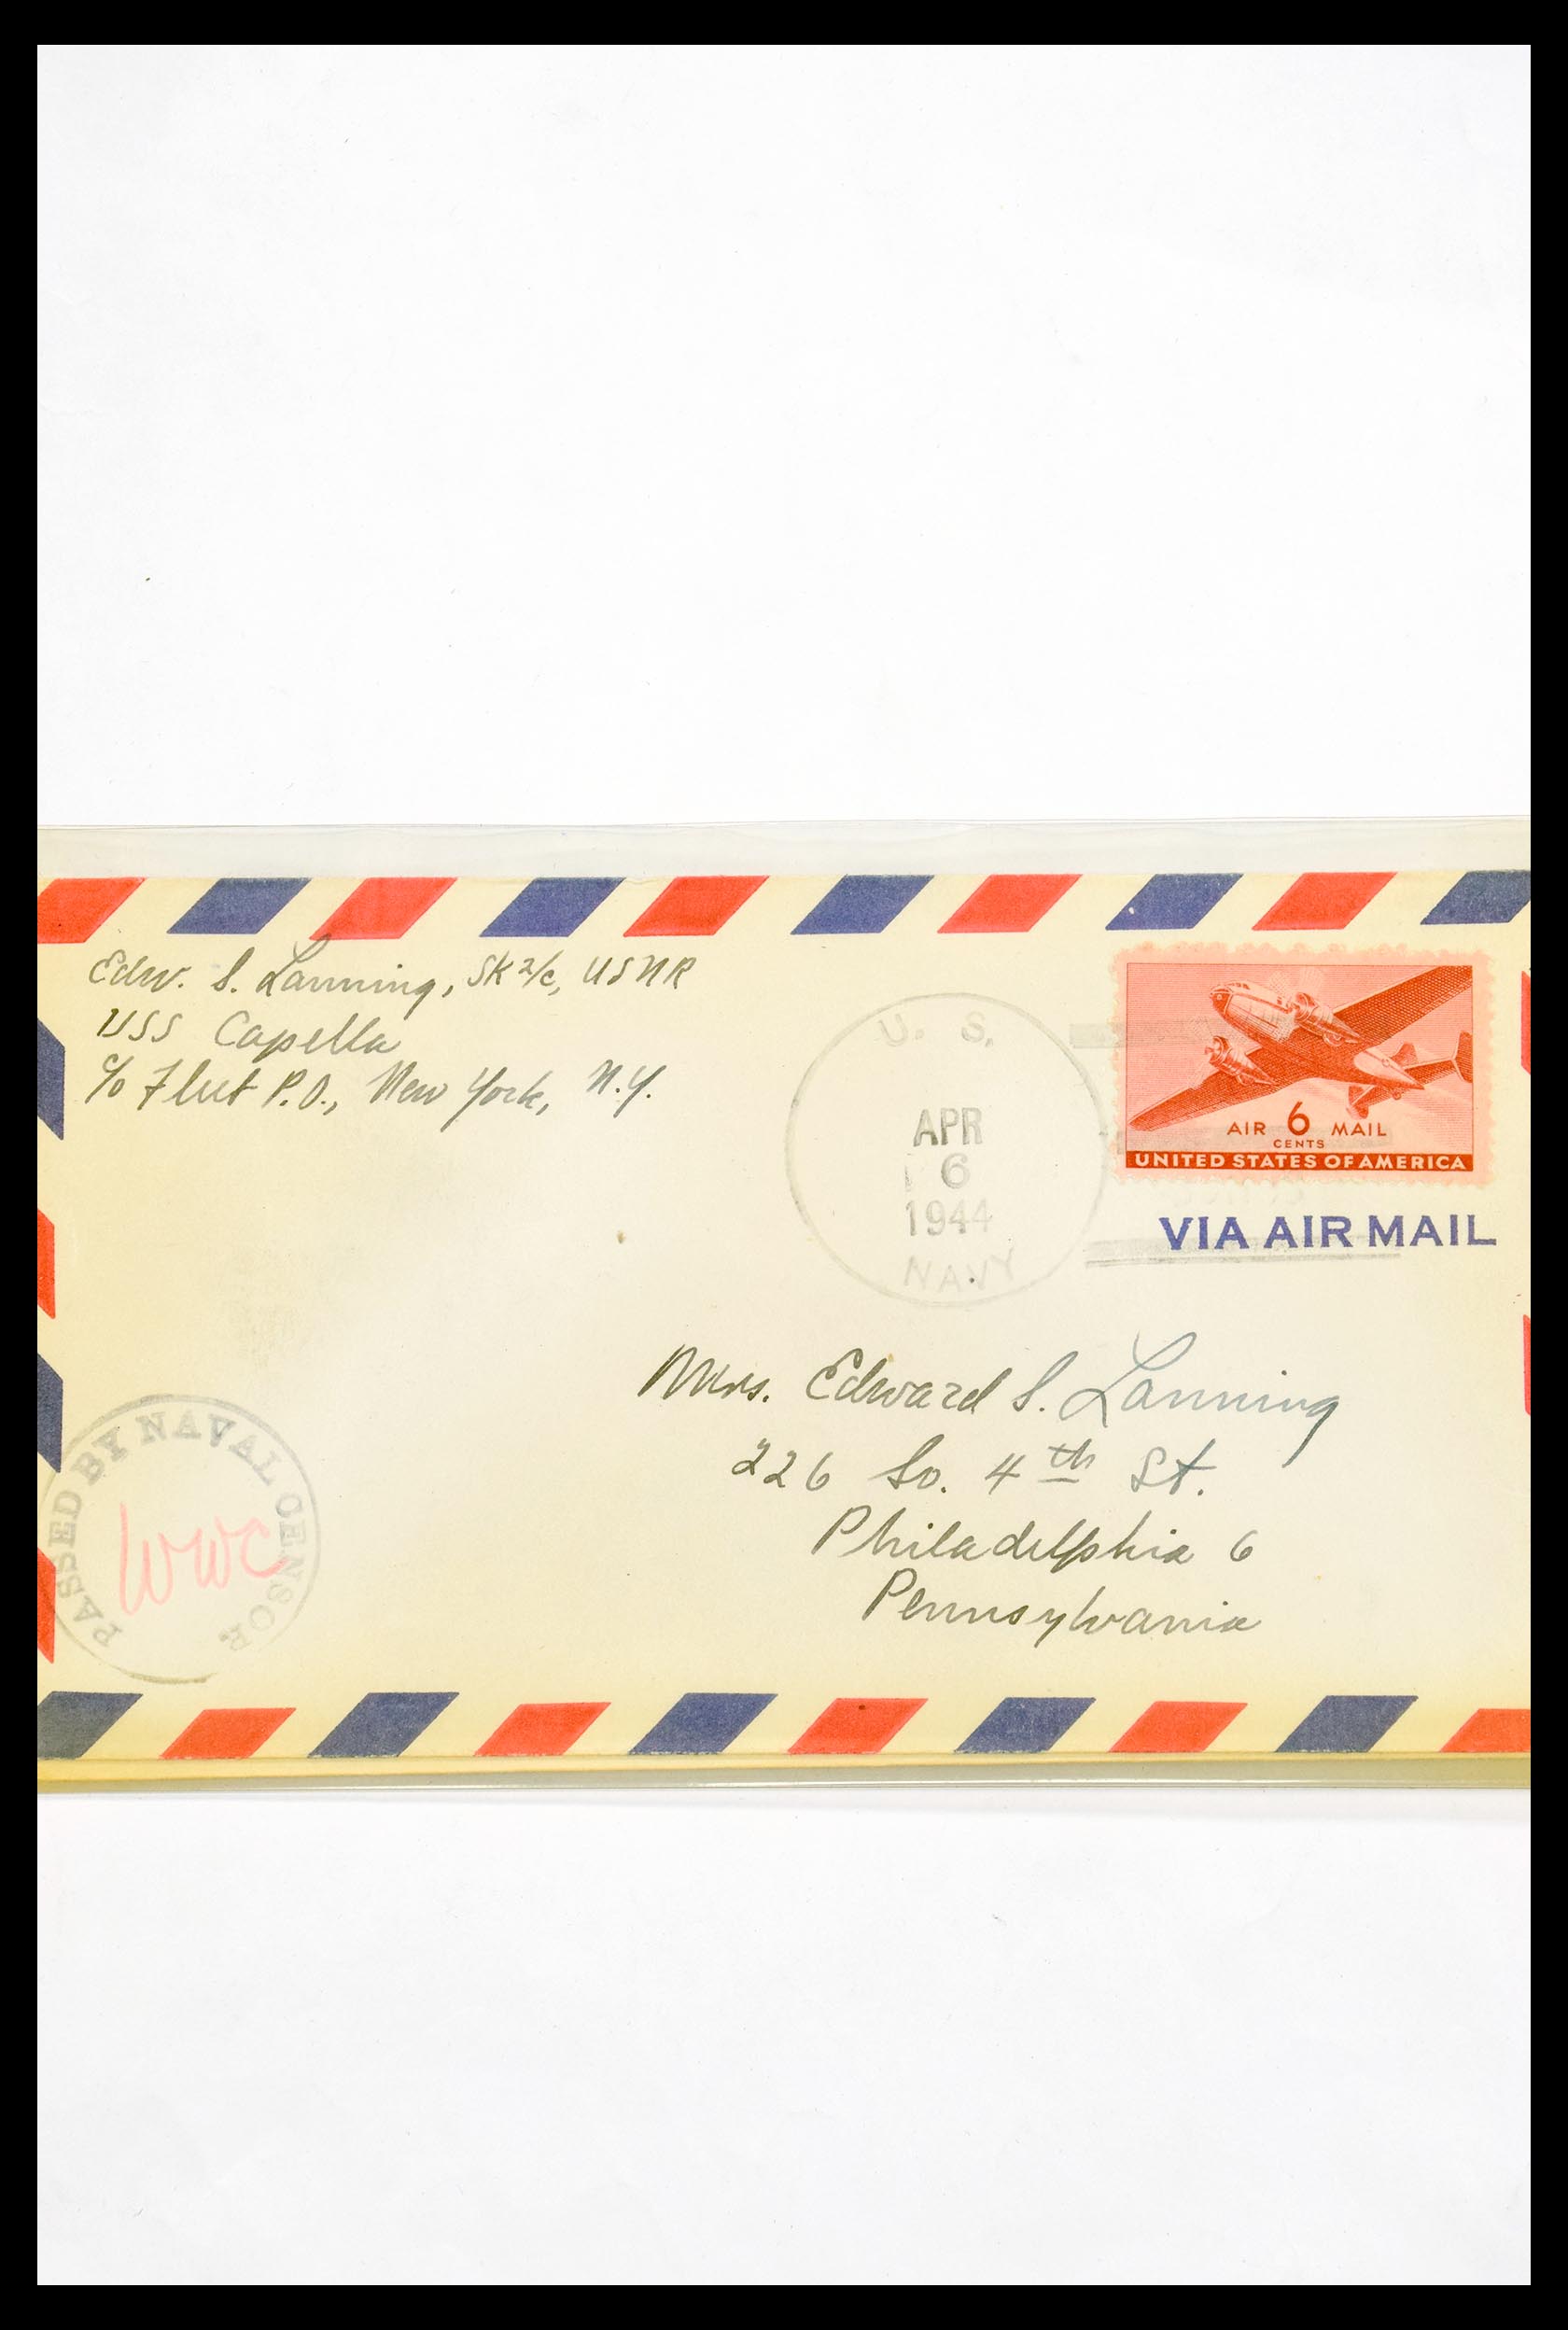 30341 320 - 30341 USA scheepspost brieven 1930-1970.